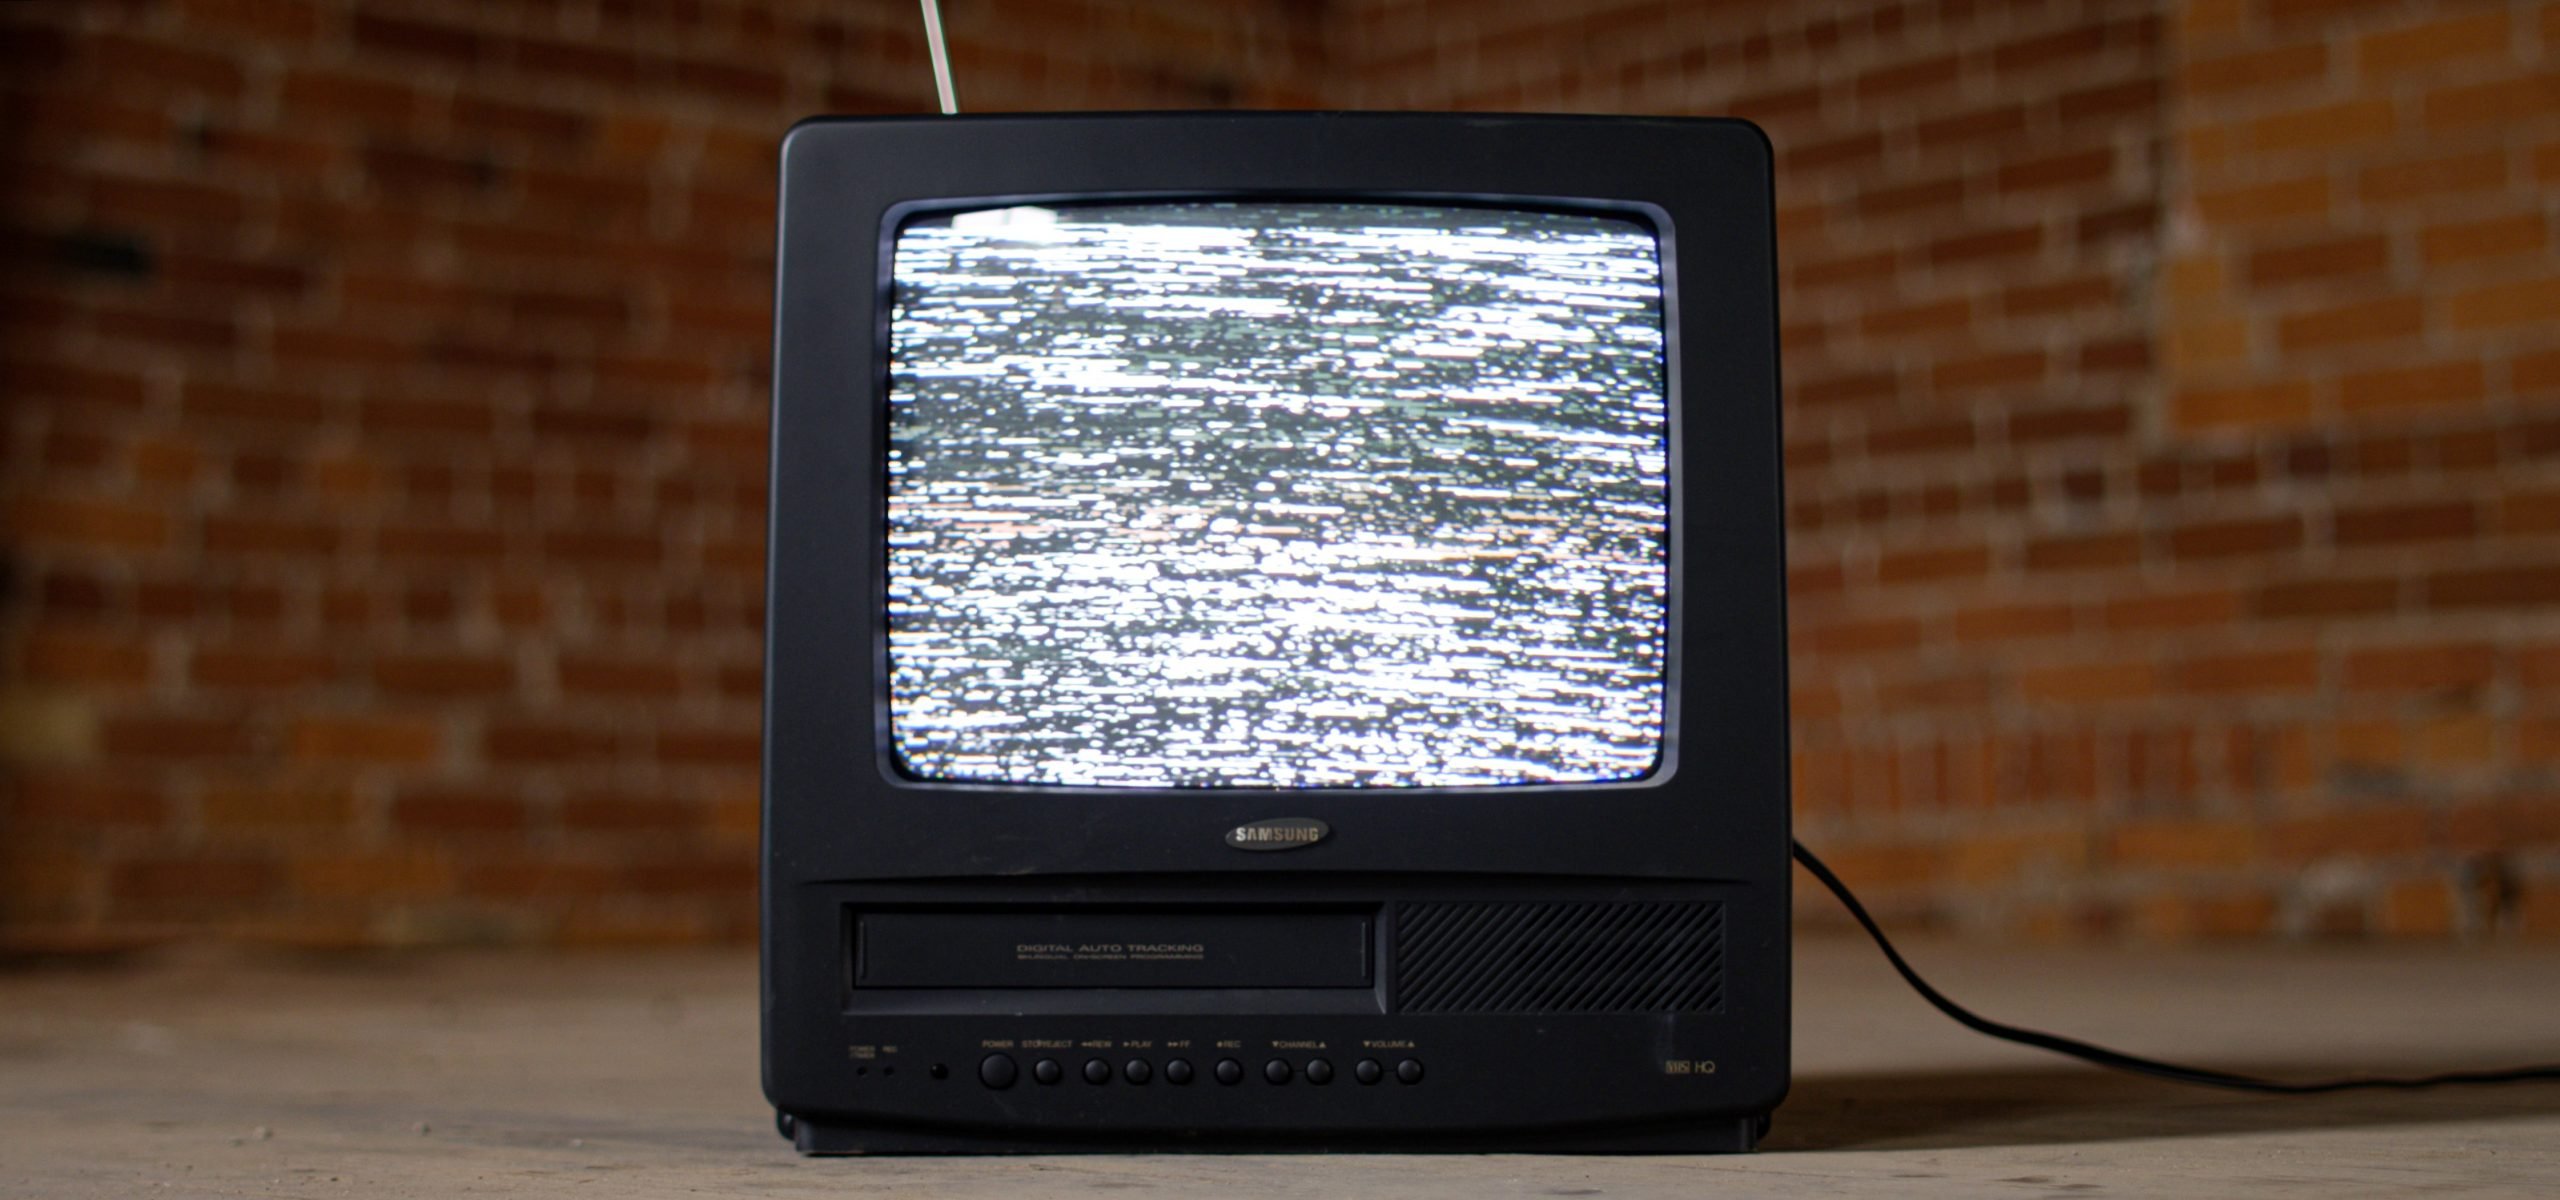 Bonus rottamazione TV: come funziona e come ottenerlo